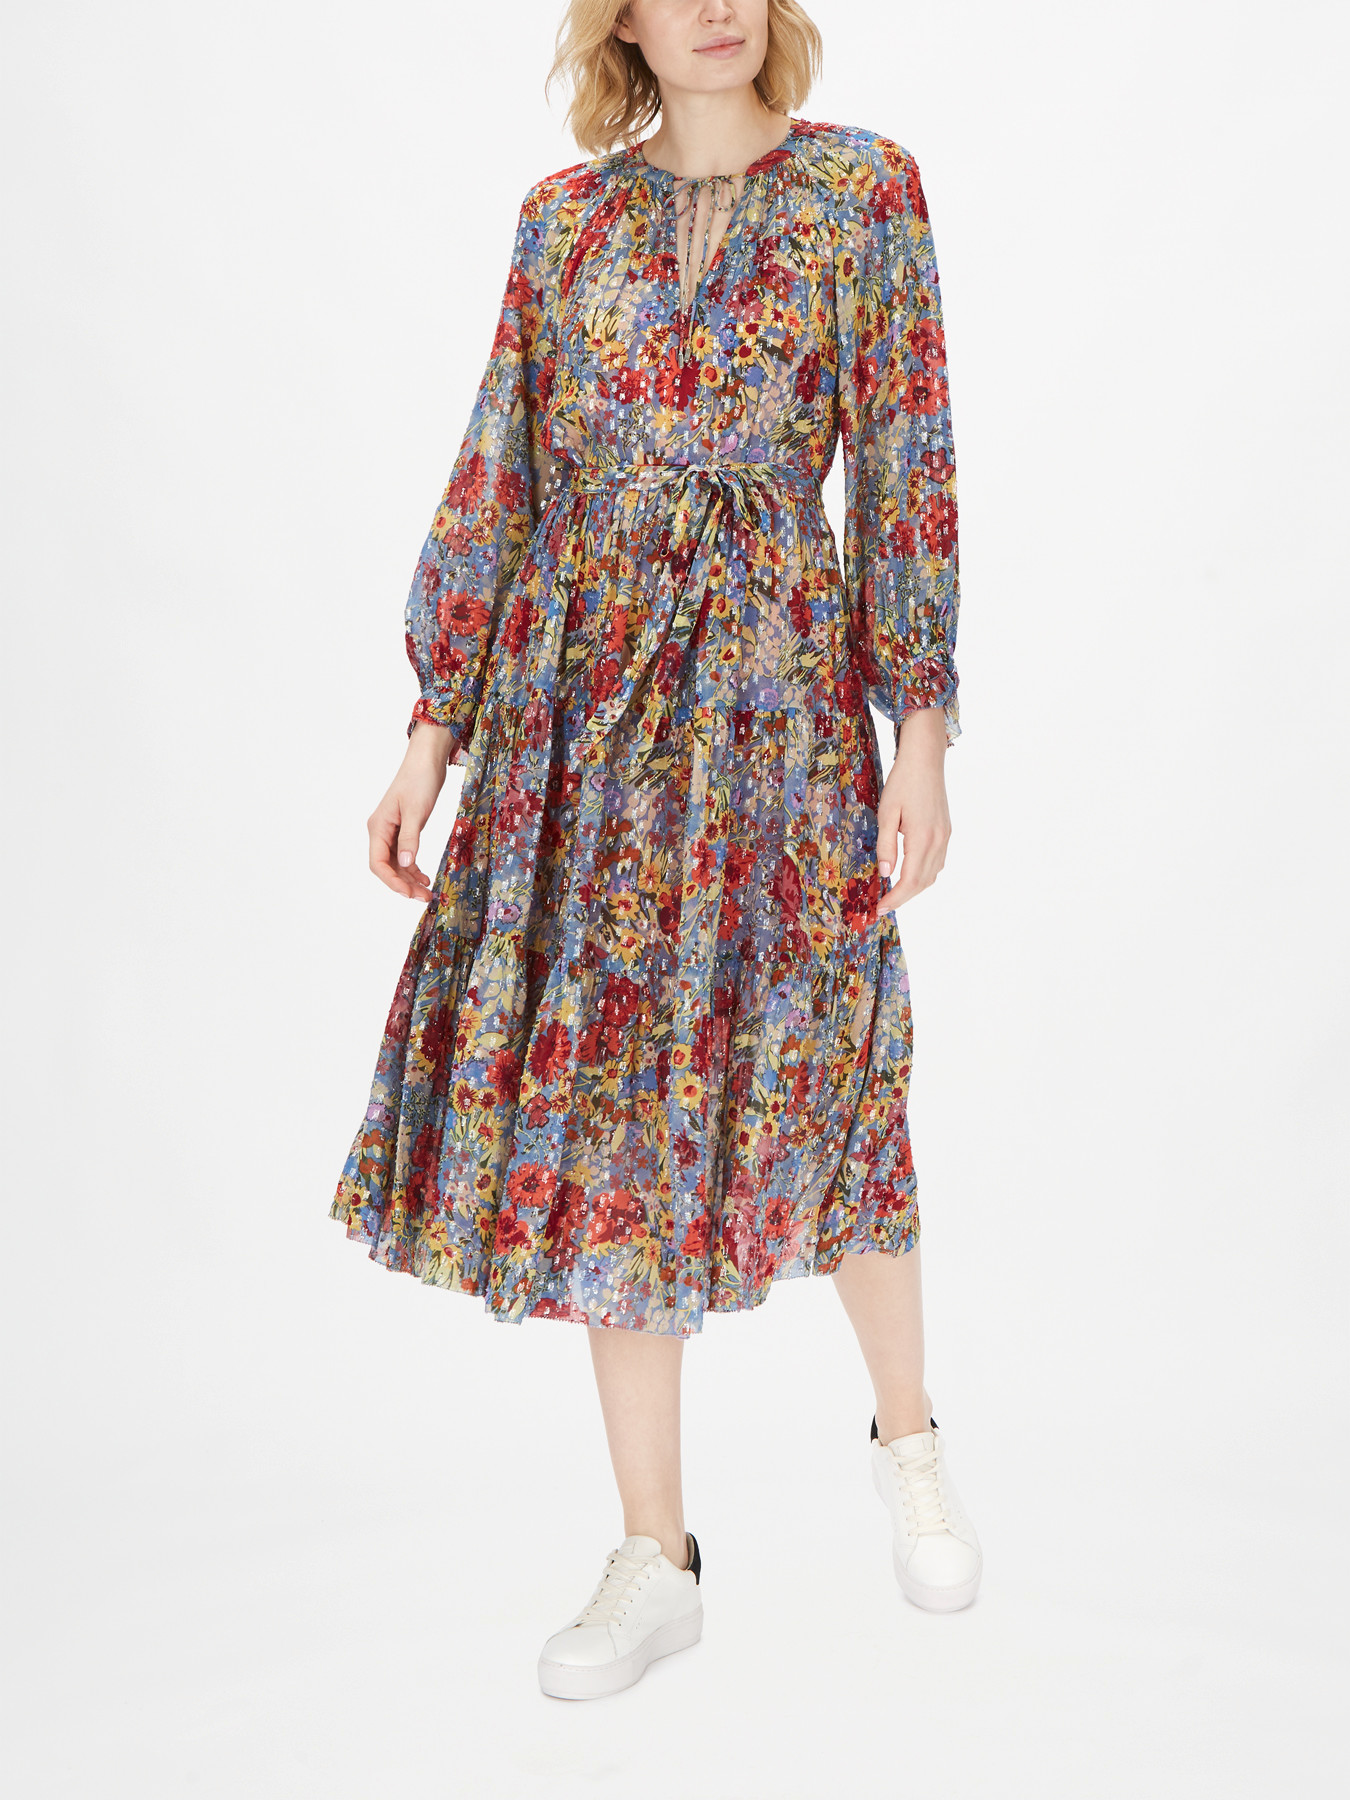 Velvet by Graham & Spencer Luana Floral Printed Dress, Day